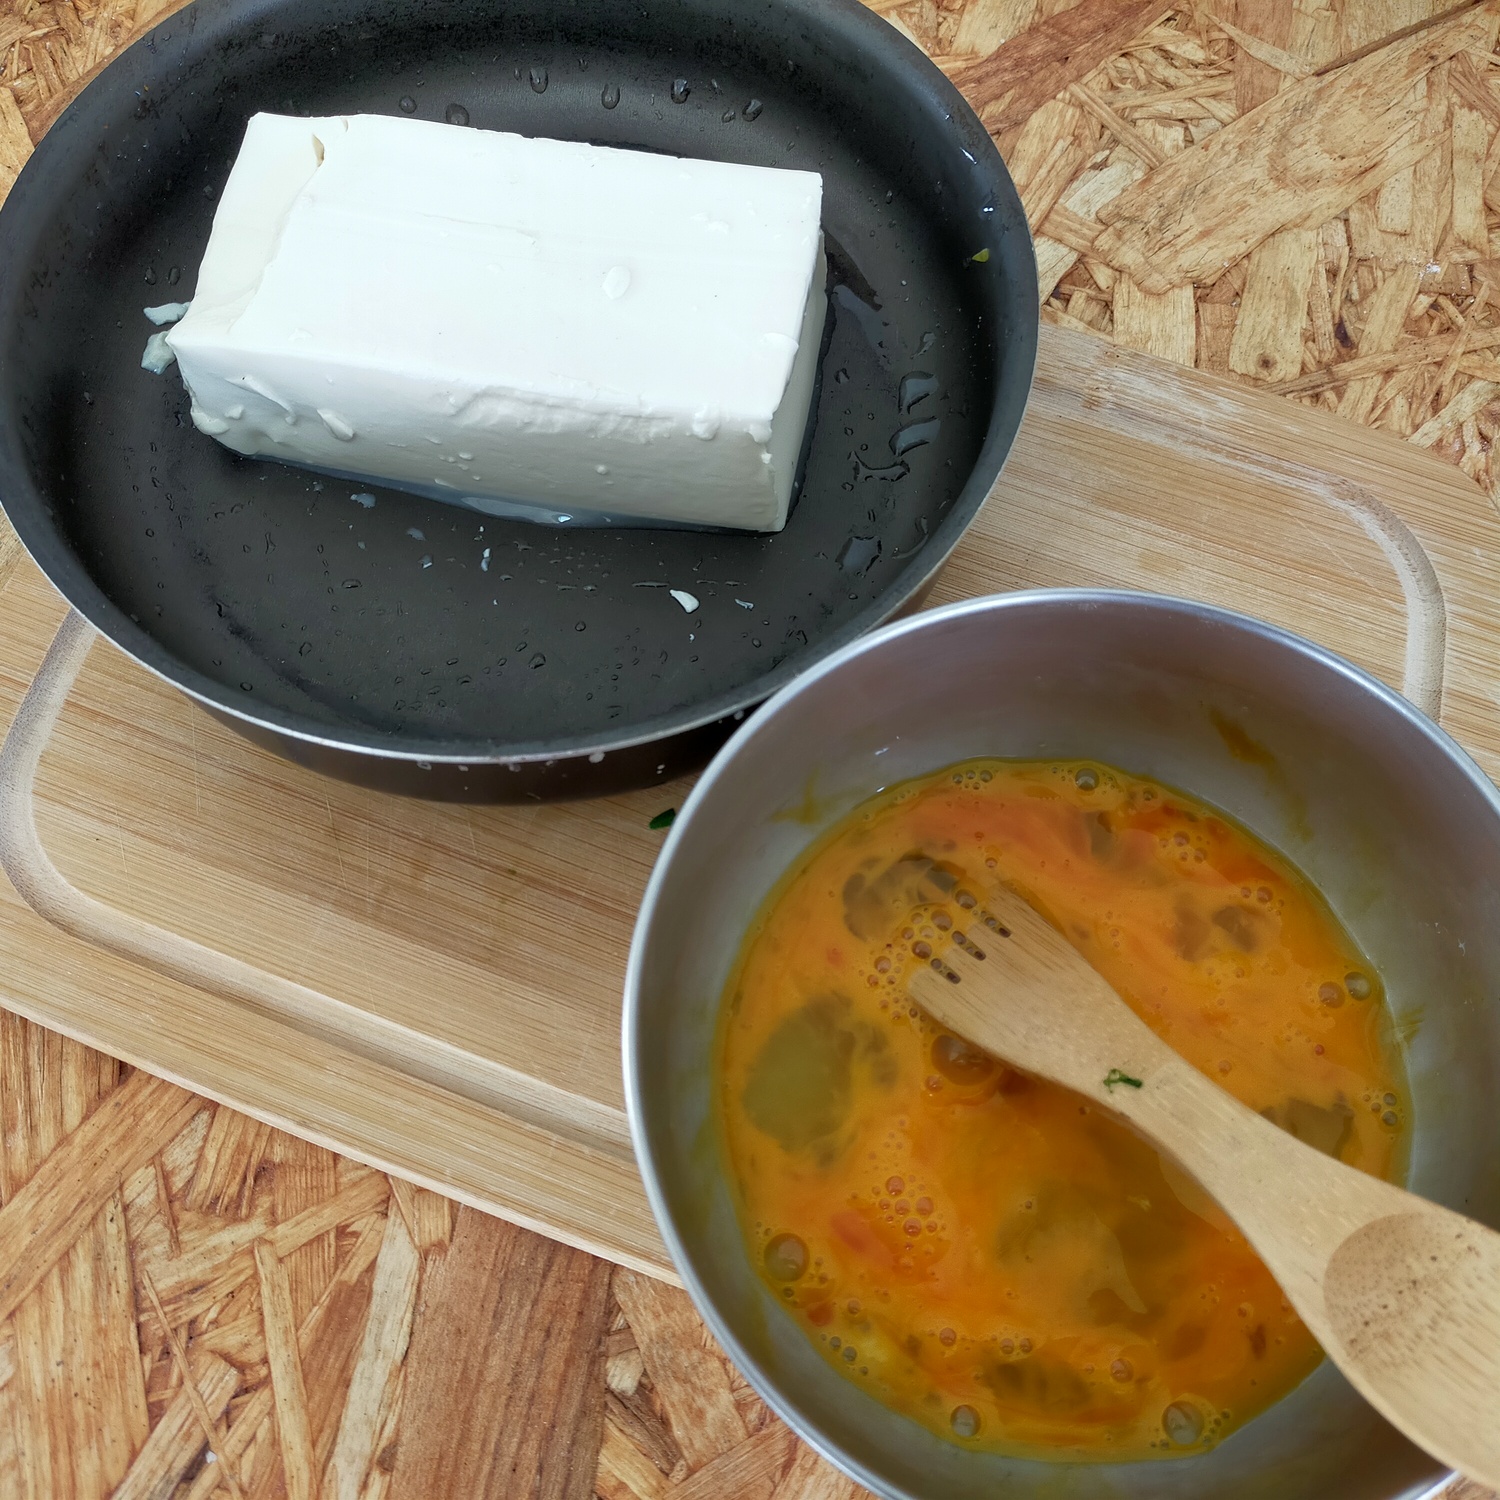 フライパンに入った豆腐とボウルに入った液状の生卵が並んでいる。